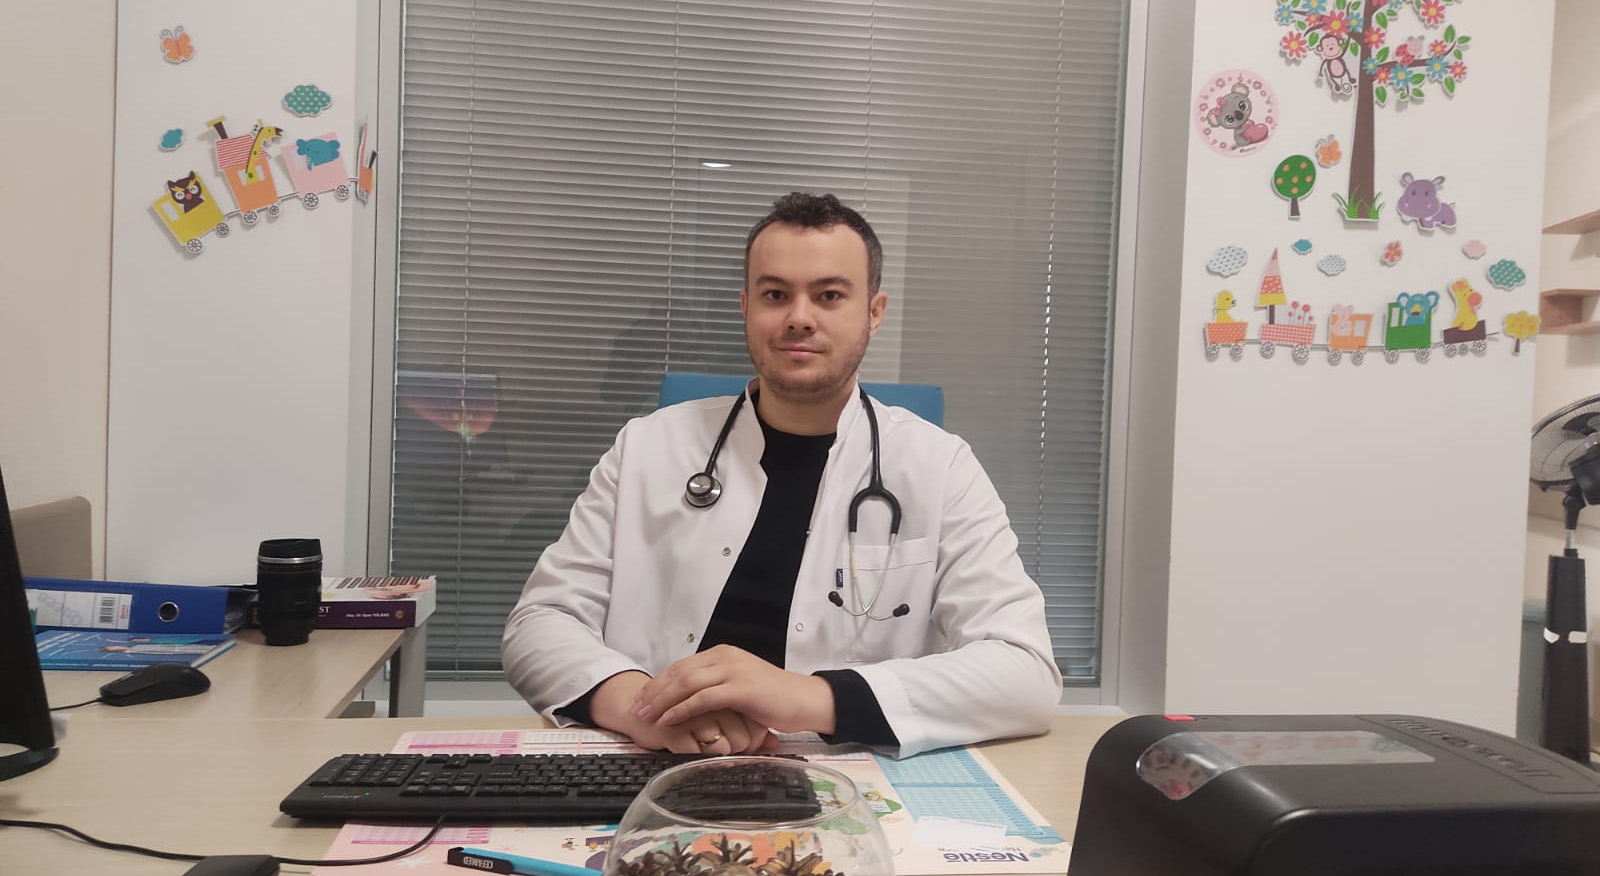 Uzm. Dr. Mehmet UZUNOĞLU Hastanemiz Çocuk Polikliniğinde hasta kabulüne başlamıştır.